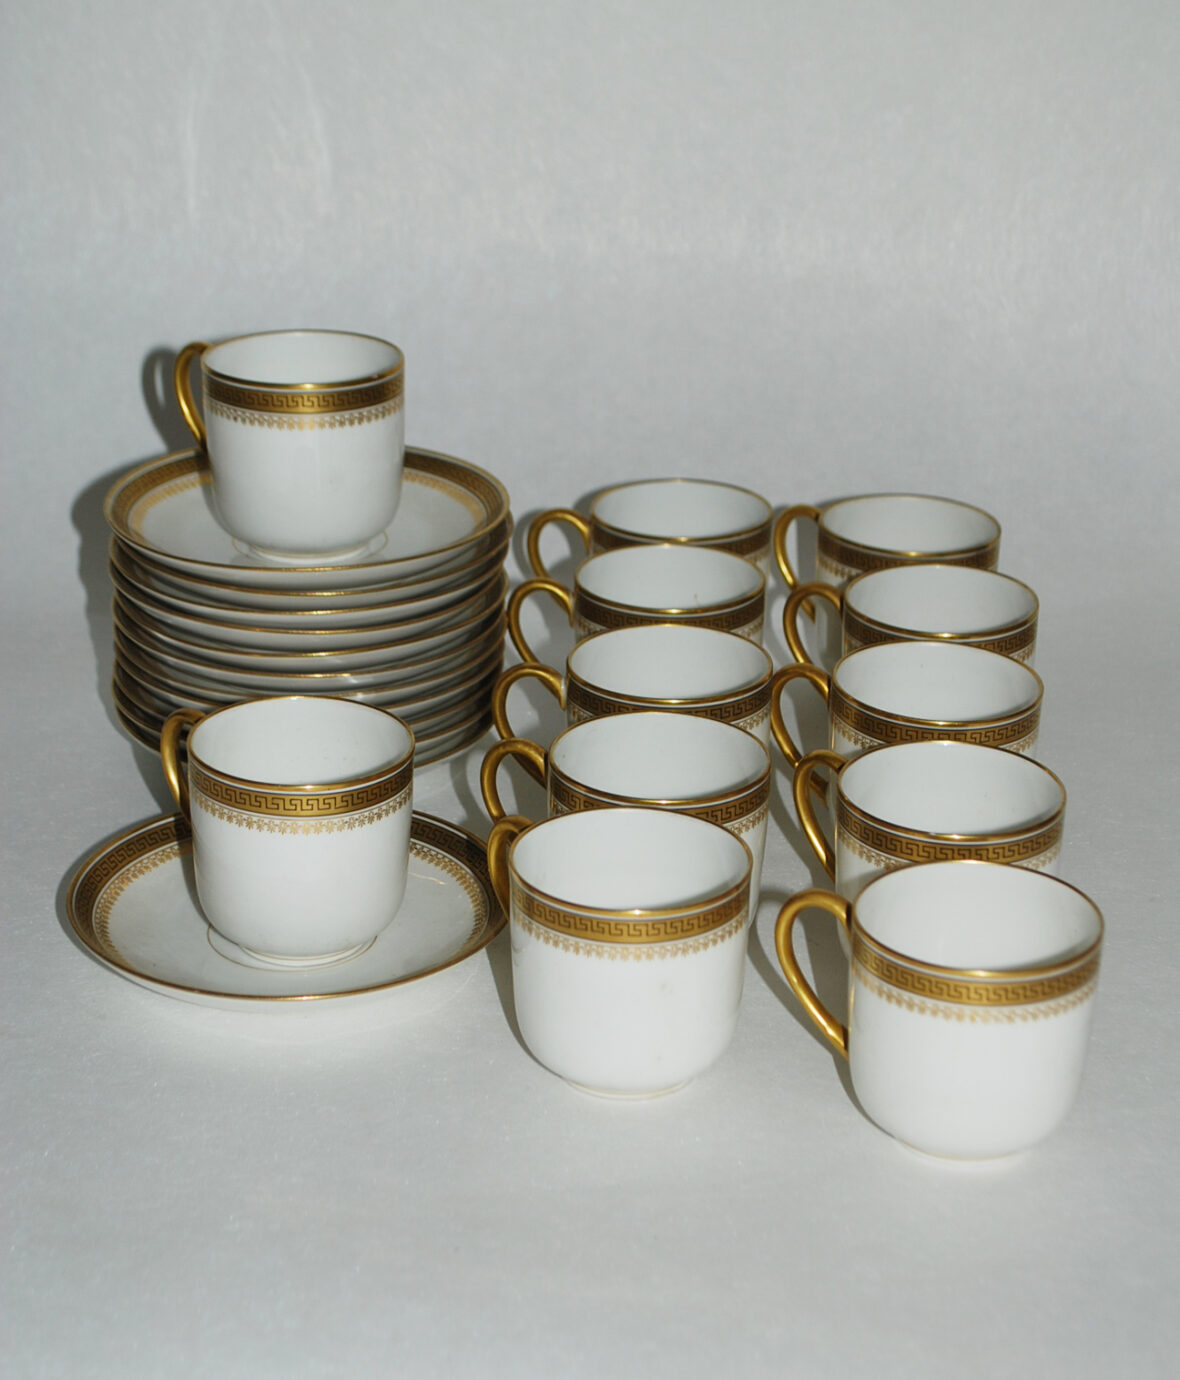 Partie de service à café en porcelaine à décor doré de frise de grecques et palmettes comprenant 12 tasses et sous tasses. Signé D&C France.